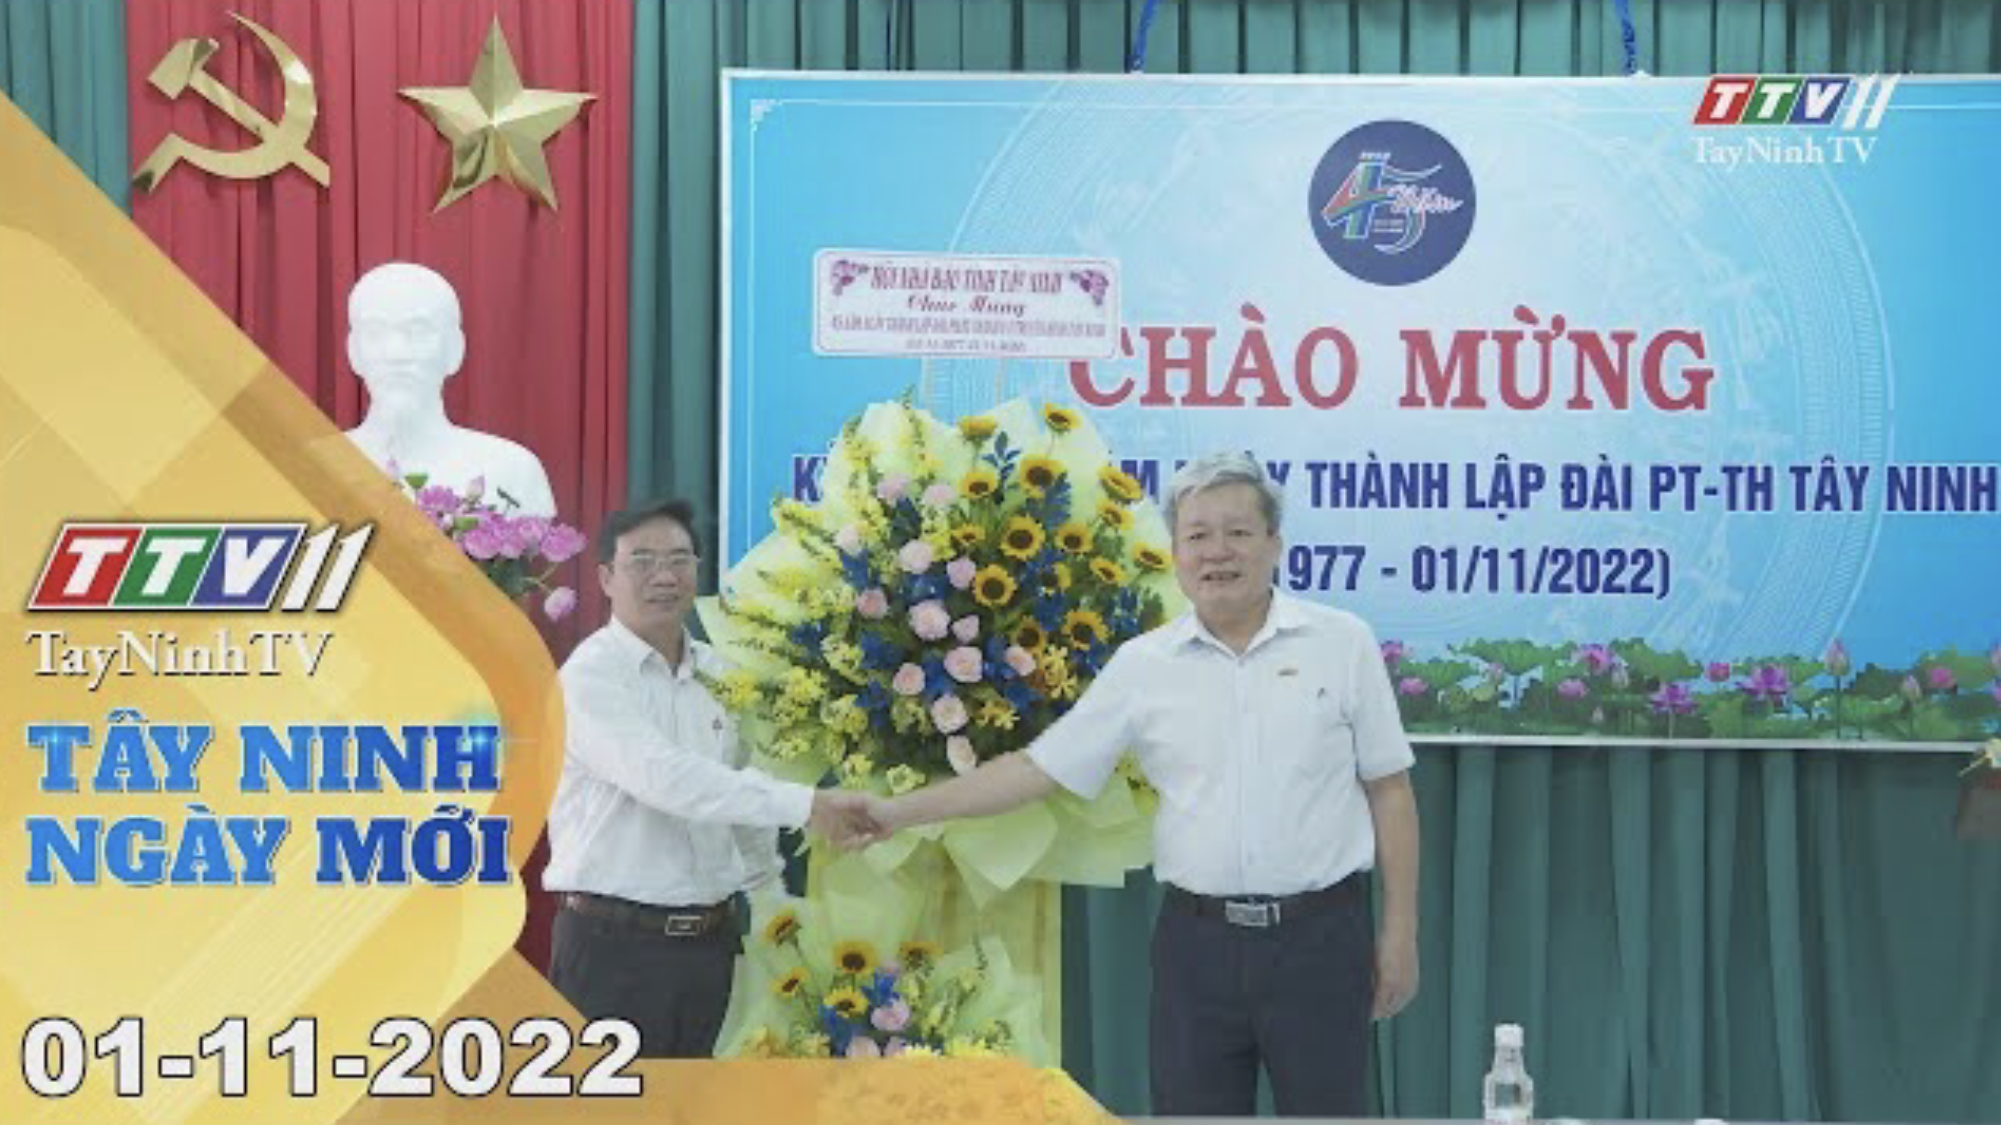 Tây Ninh ngày mới 01-11-2022 | Tin tức hôm nay | TayNinhTV